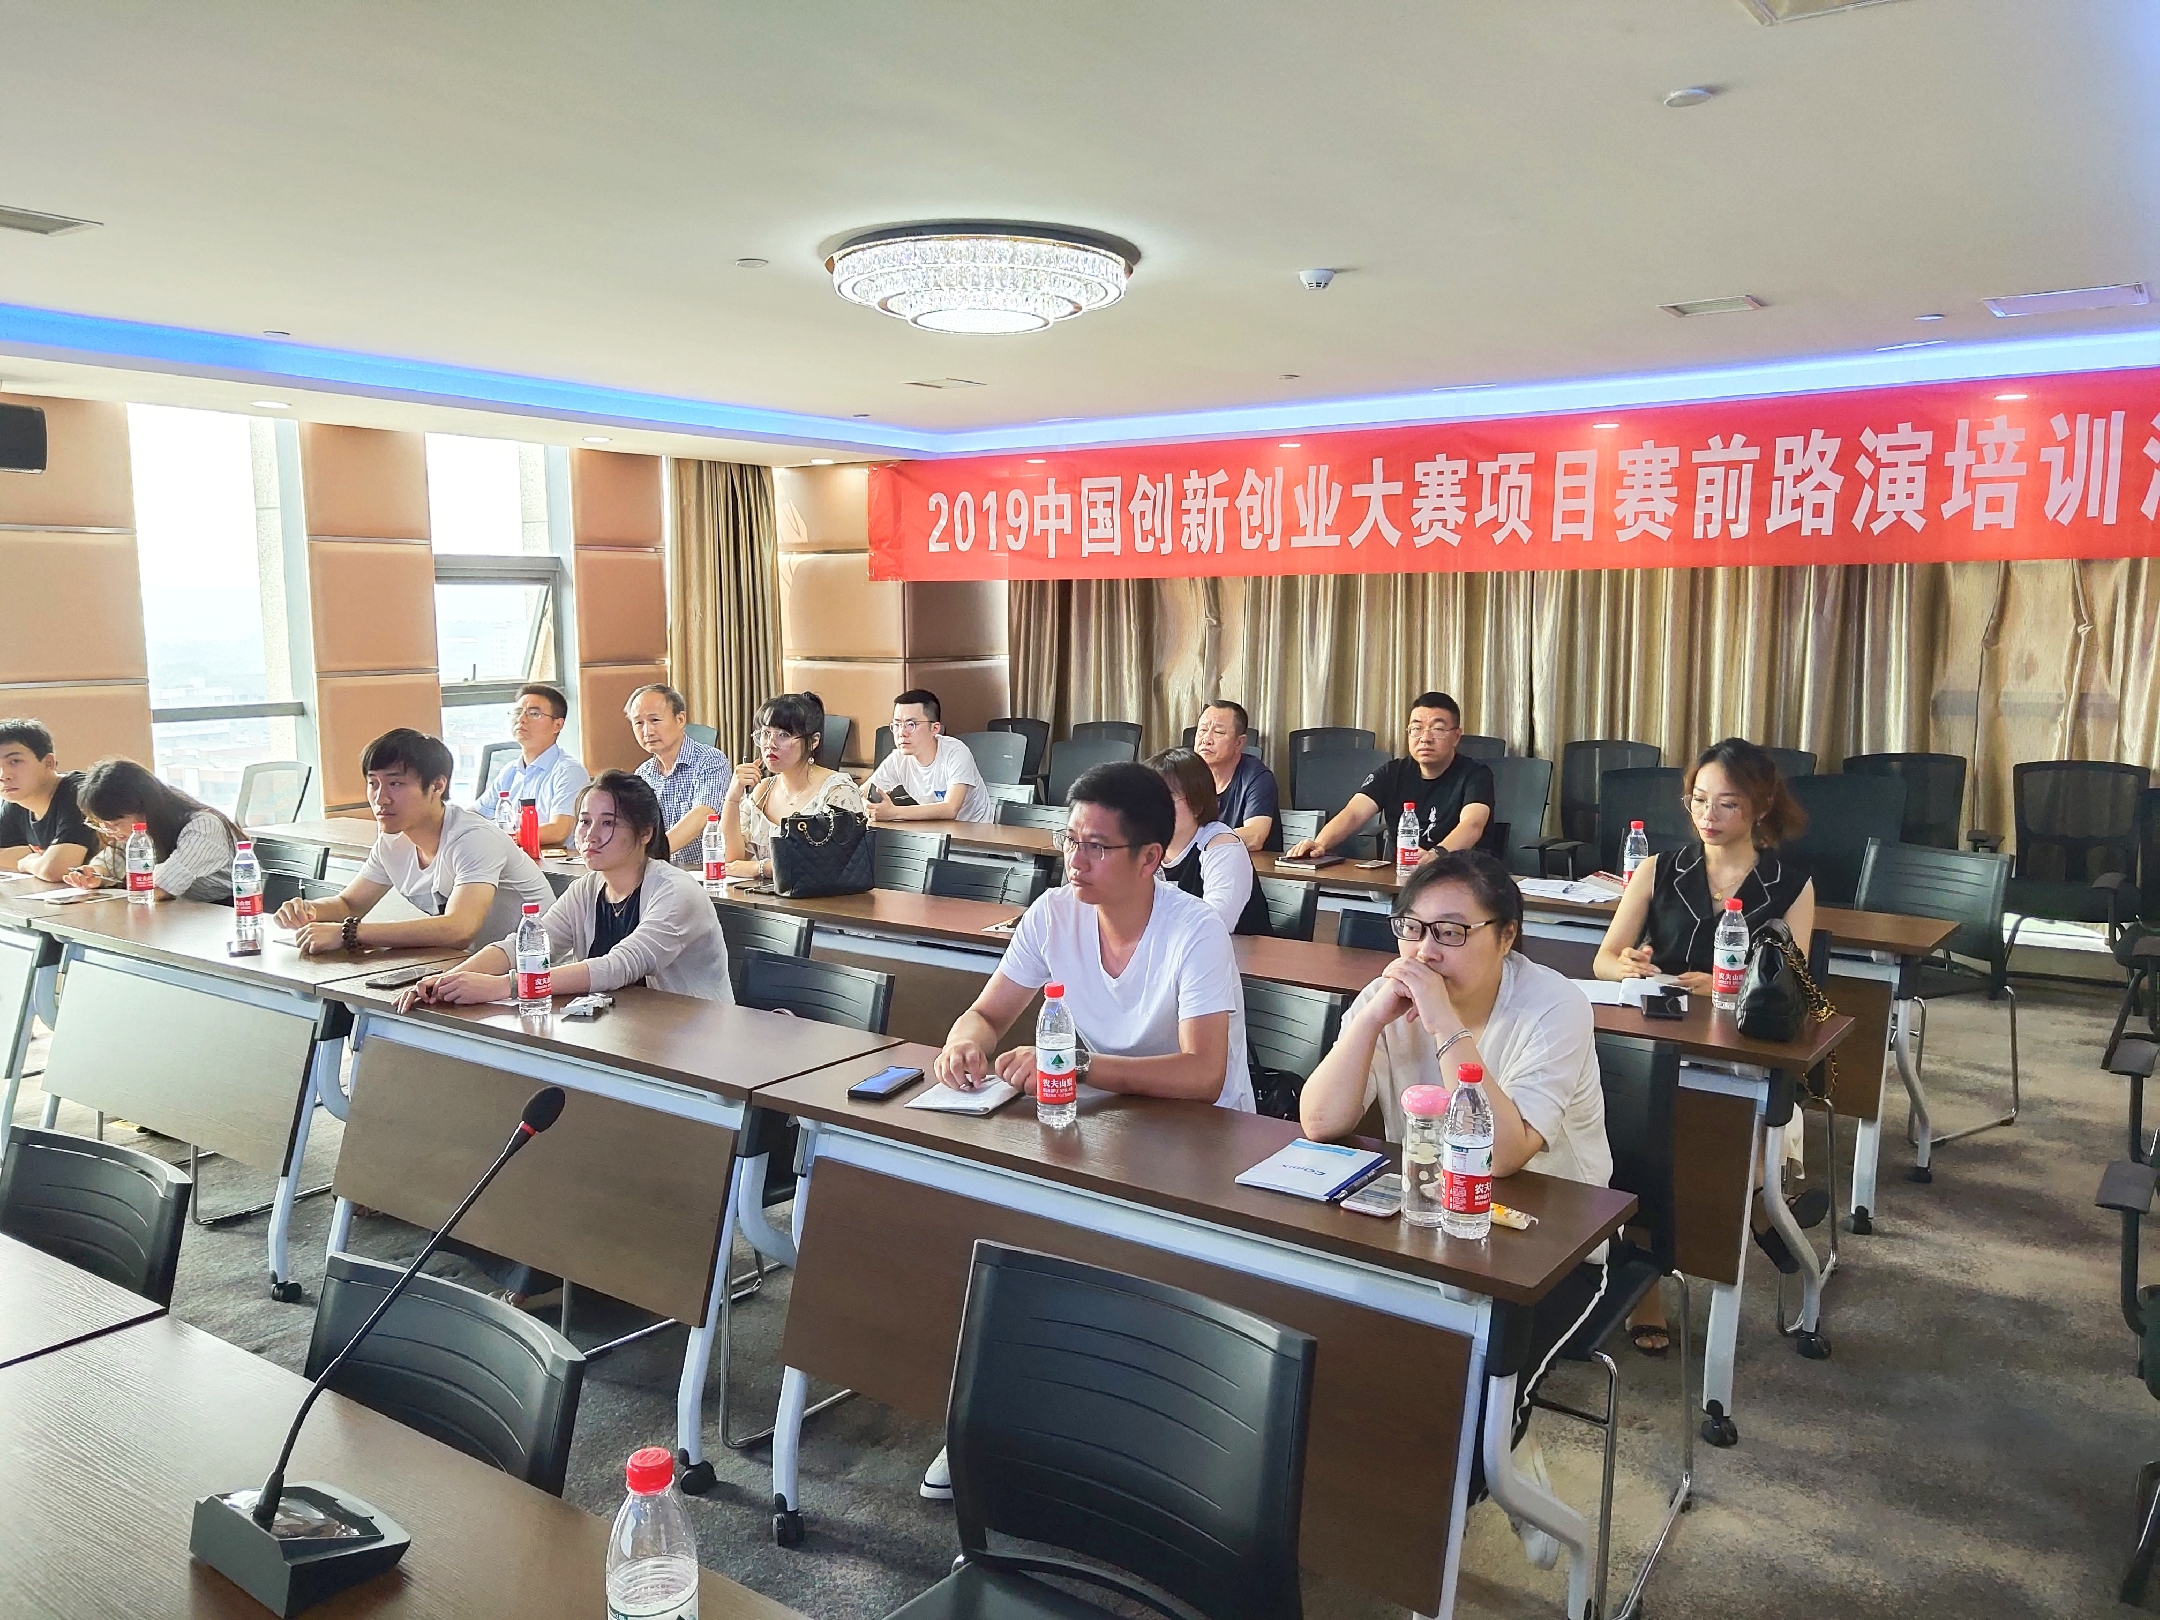 2019年创新创业大赛项目培训活动在鹰潭高新区颐高物联网产业园顺利召开 